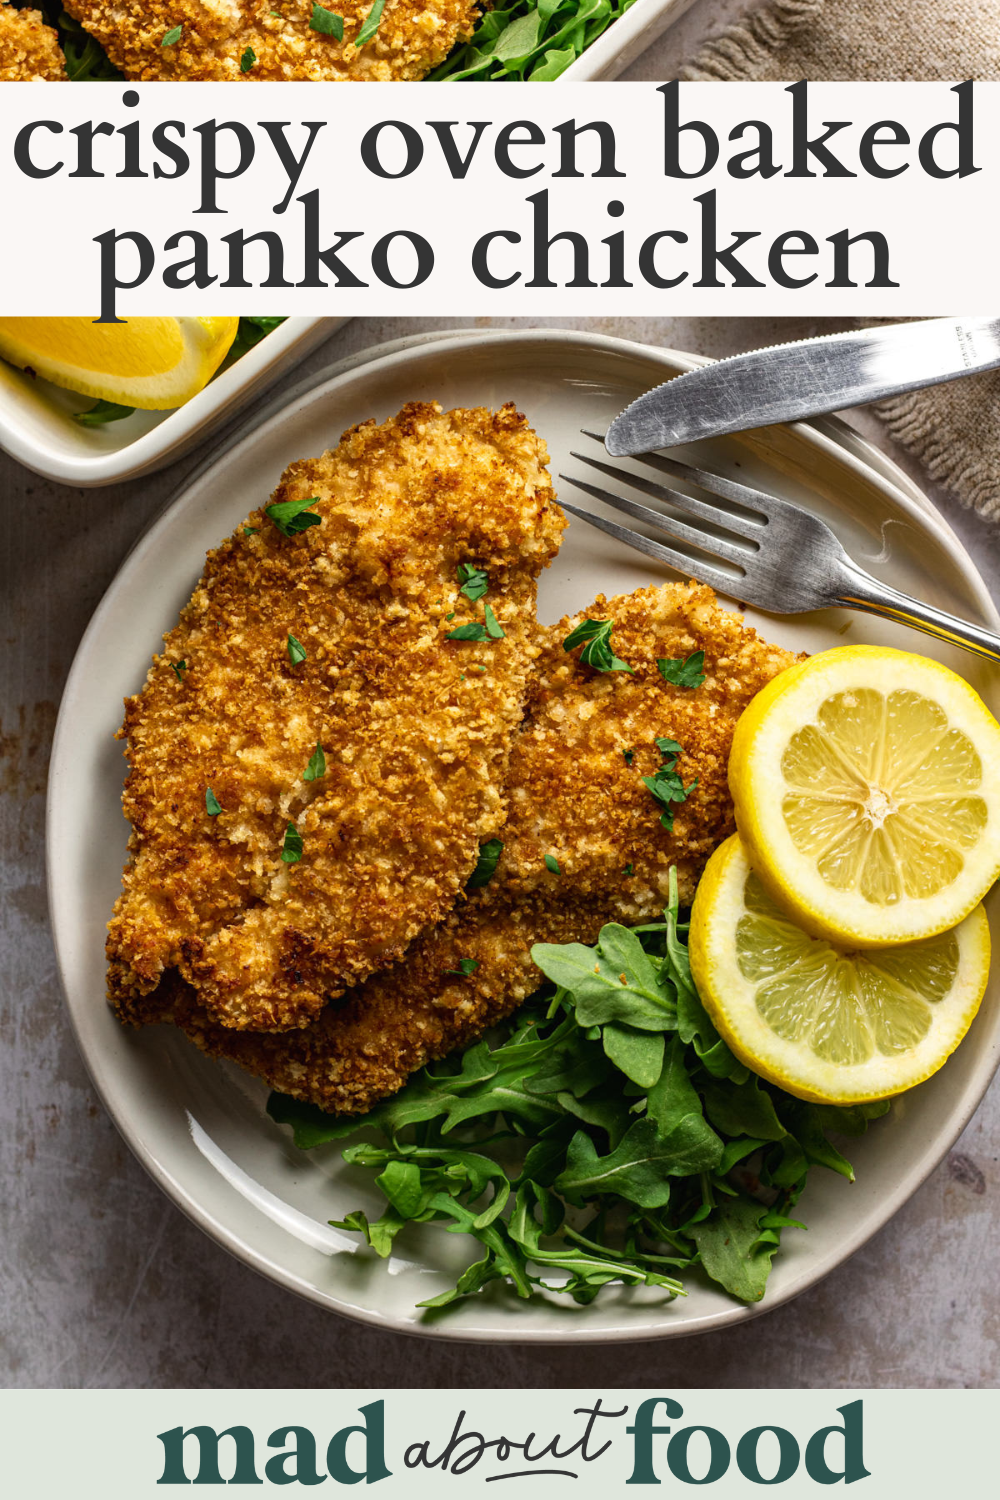 Image for pinning crispy oven baked panko chicken recipe on pinterest